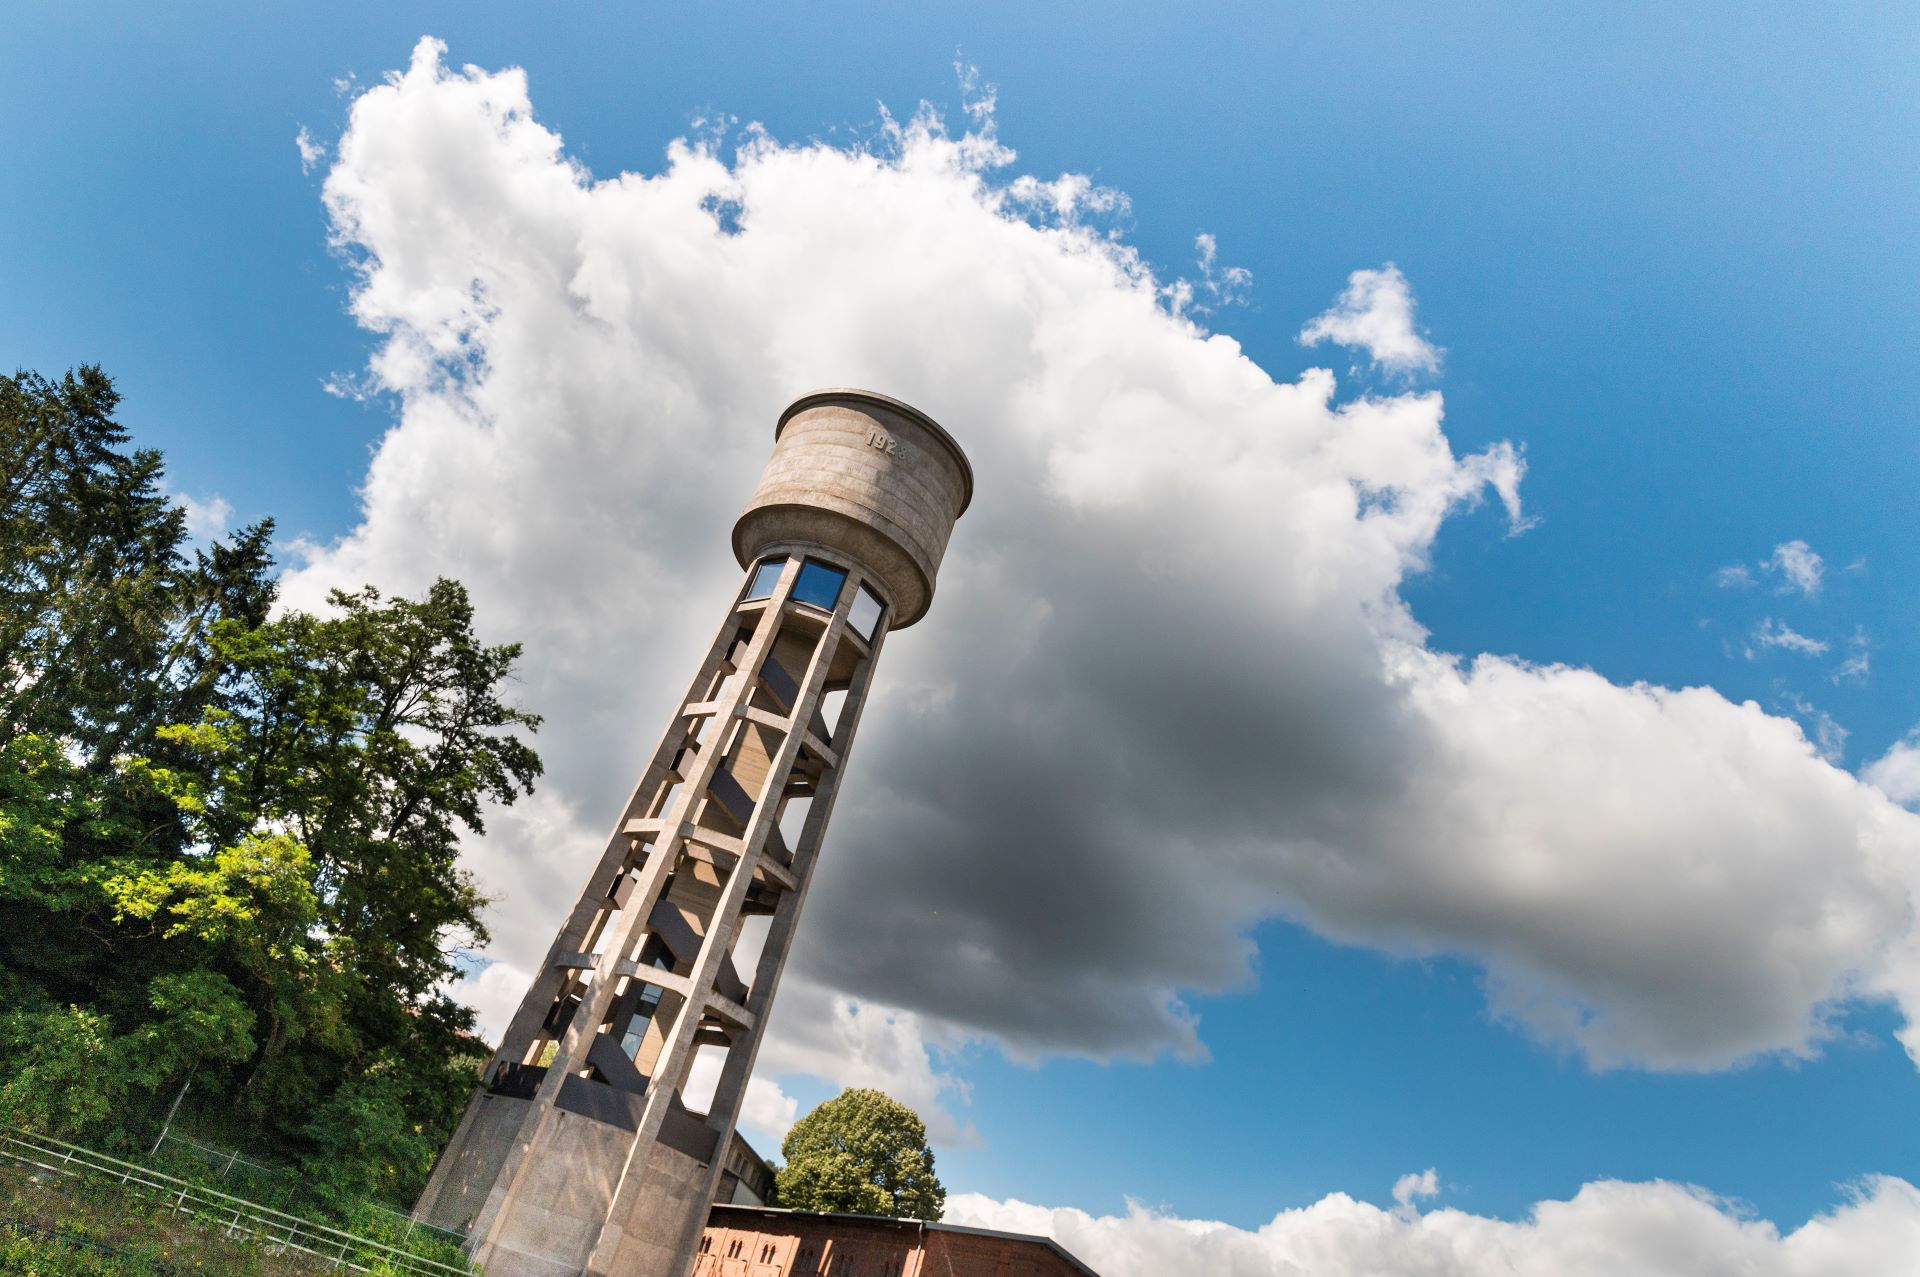 Ein Wasserturm, der eine der Steichen-Fotokollektionen beherbergt, ist vor einem blauen Himmel mit weißen Wolken abgebildet. Im Hintergrund sind Bäume zu sehen.